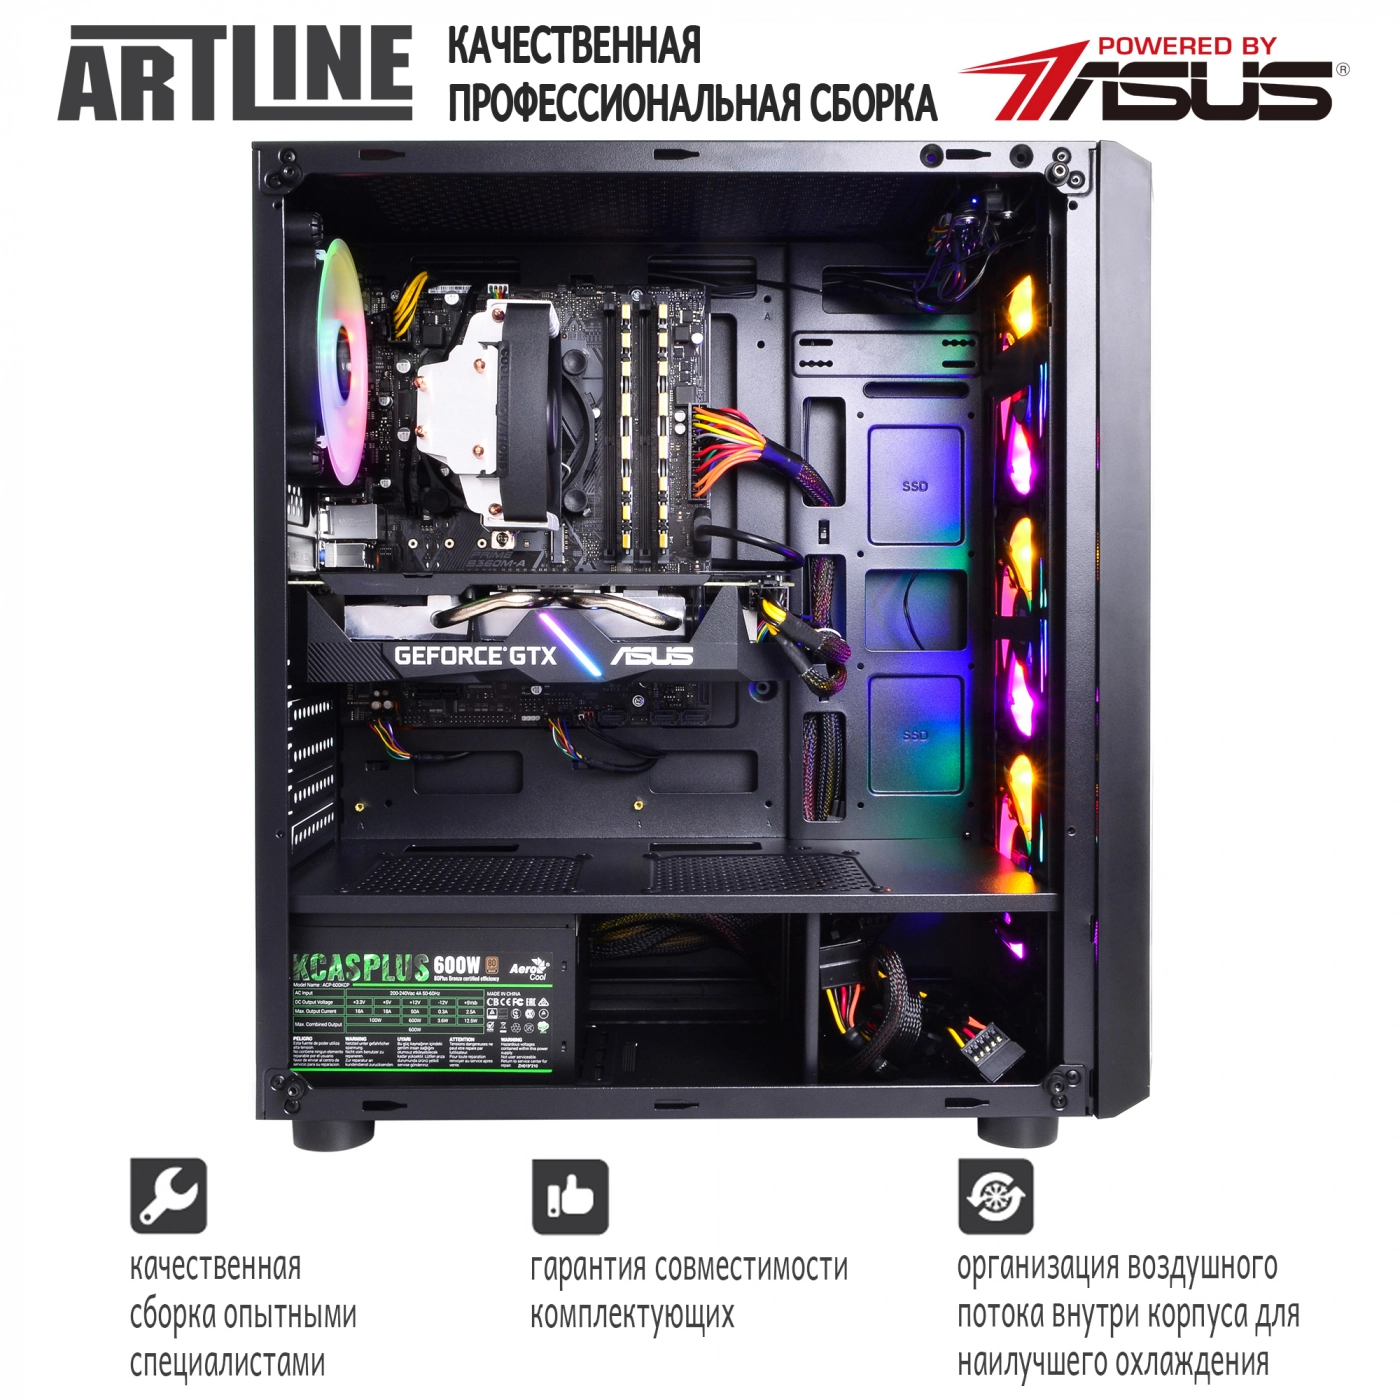 Купить Компьютер ARTLINE Gaming X35v30 - фото 8